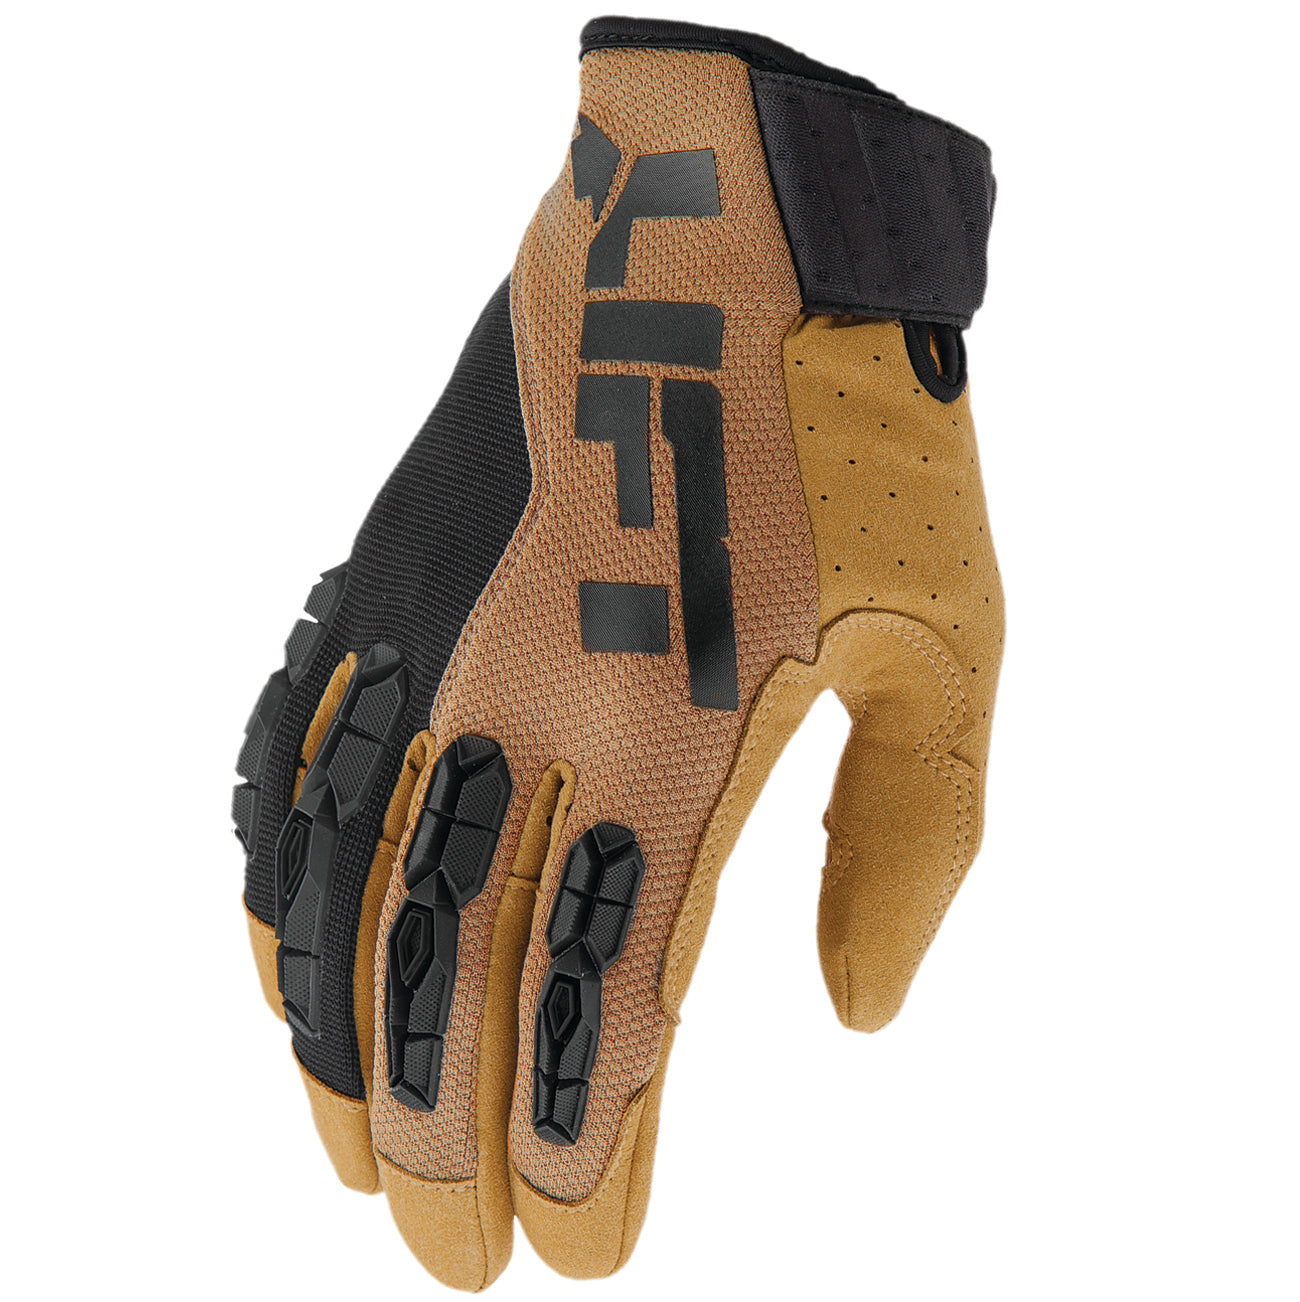 LIFT Safety - GRUNT Glove (Brown)